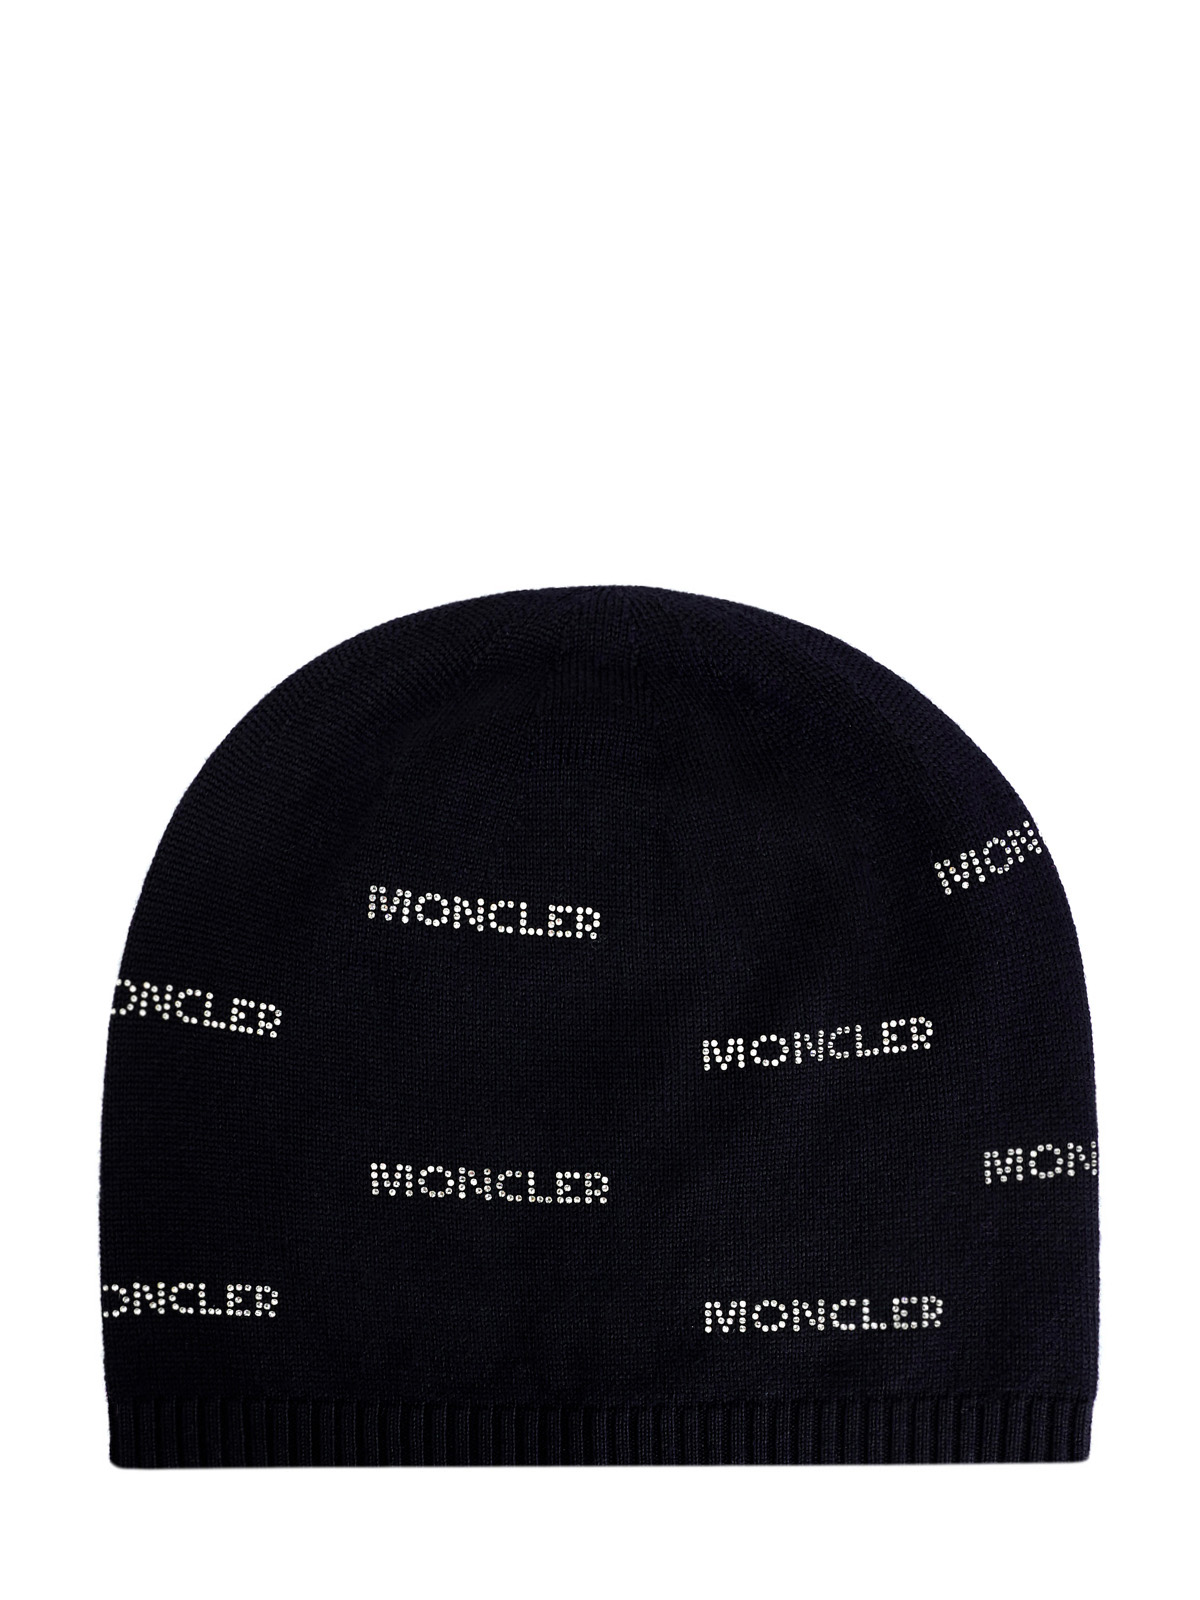 Шерстяная шапка-бини с декором из мерцающих кристаллов MONCLER, цвет черный, размер 40.5;41;41.5;42;42.5;43;43.5;44 - фото 1